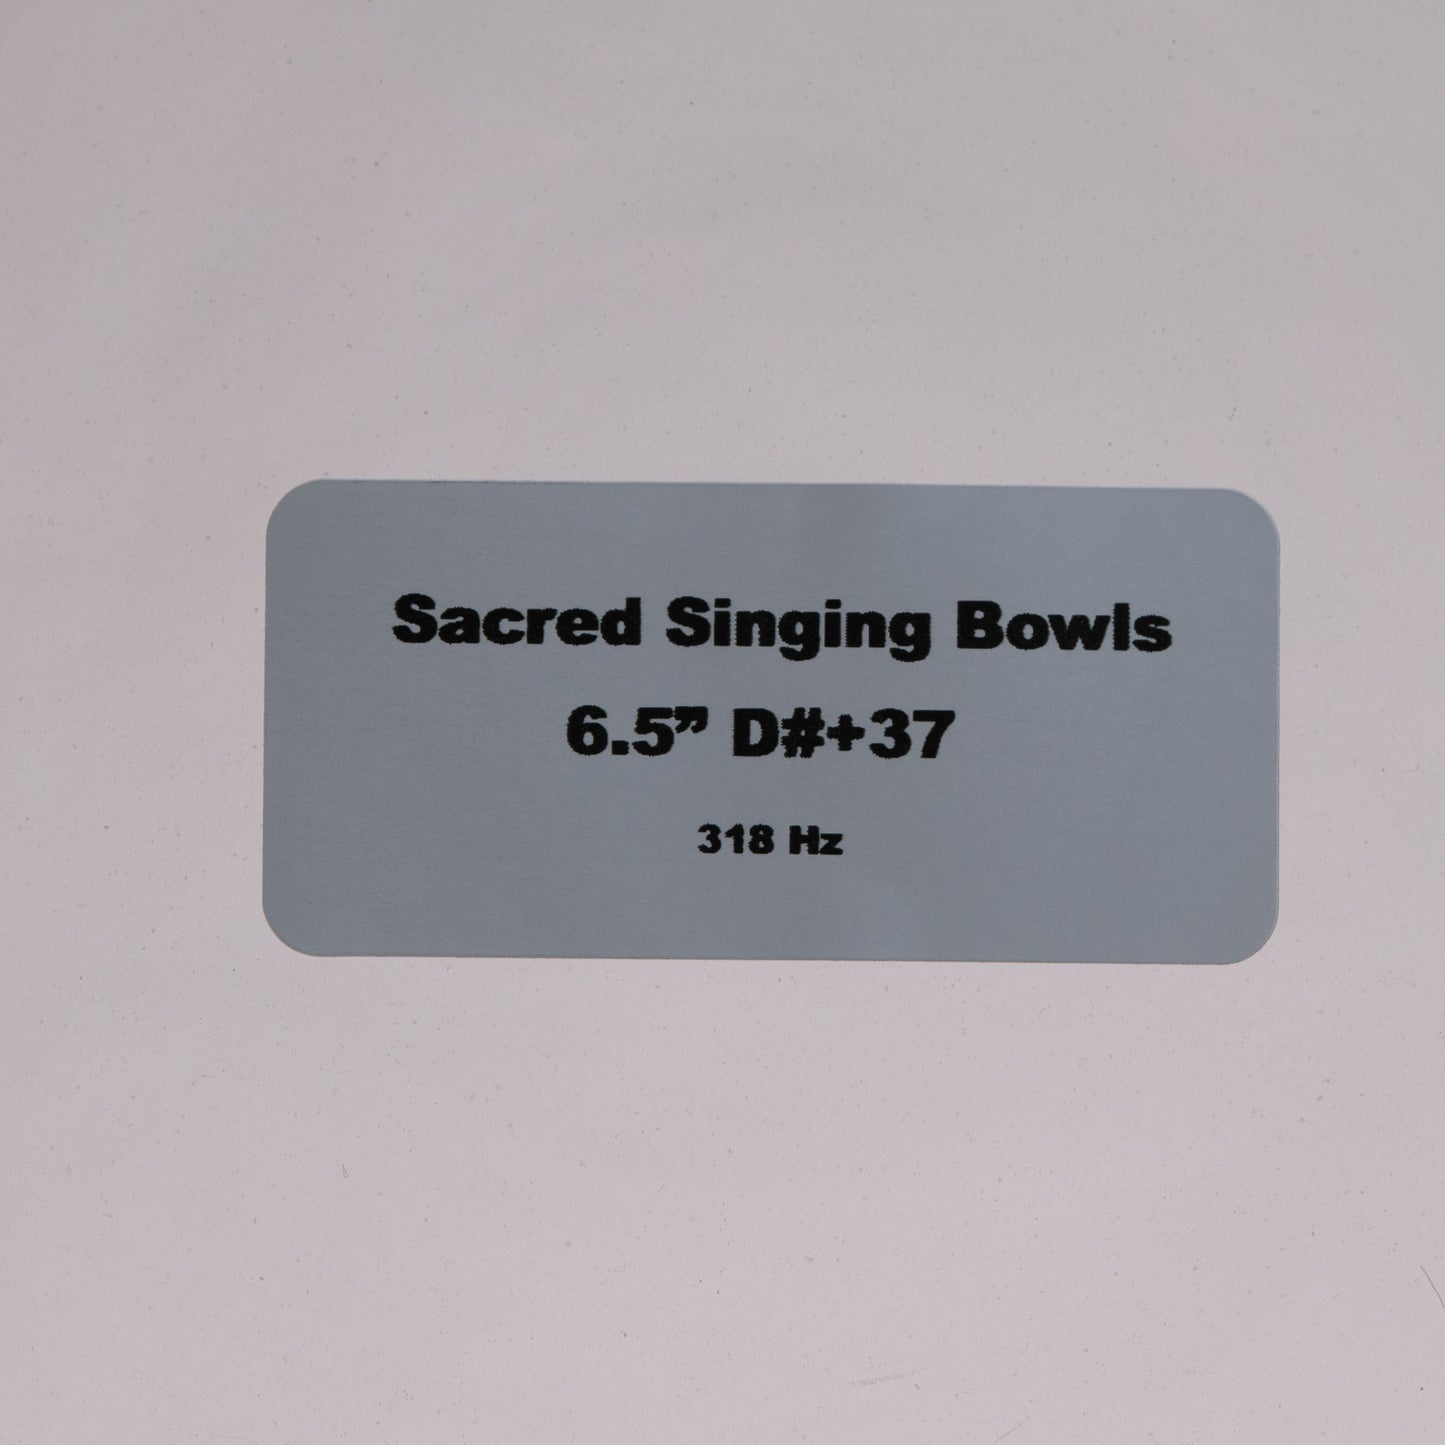 6.5" D#+37 Clear Quartz Crystal Singing Bowl, Sacred Singing Bowls